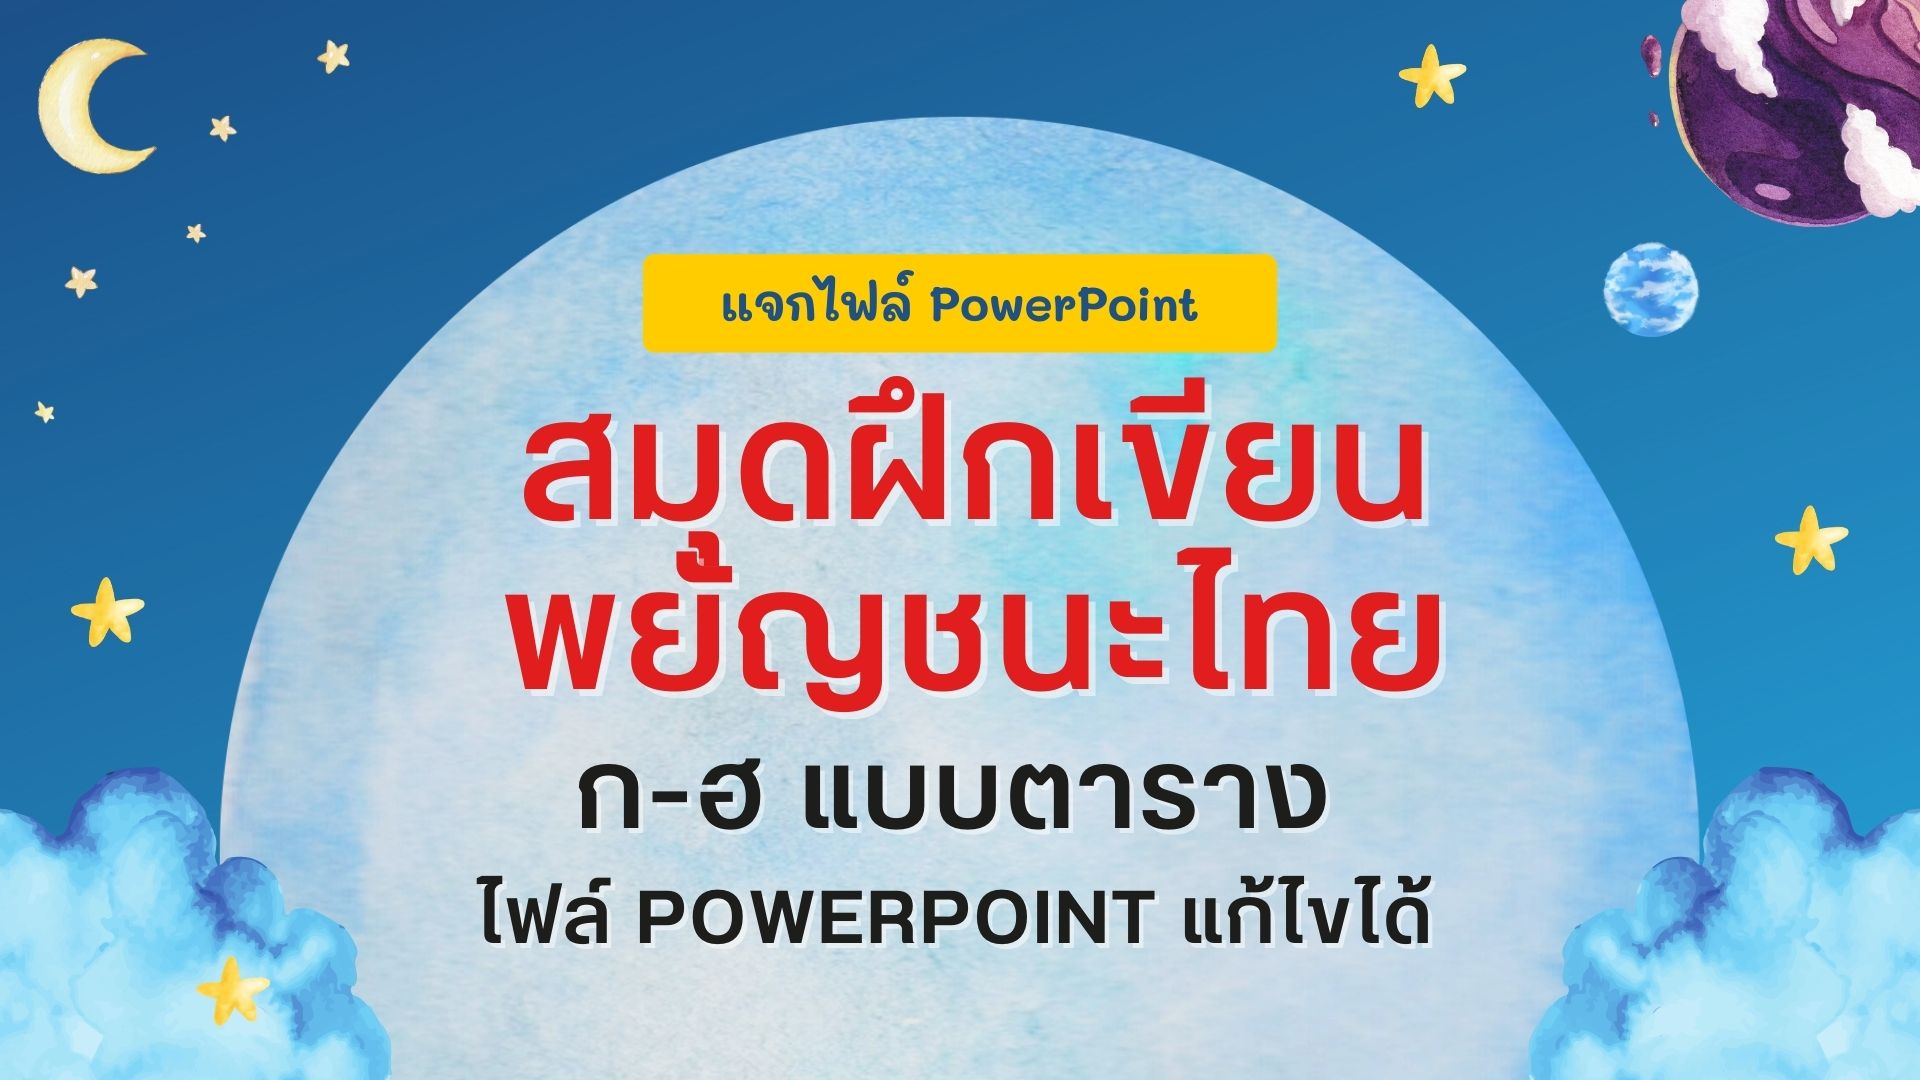 แจกไฟล์ PowerPoint สมุดฝึกเขียนพยัญชนะไทย ก-ฮ แบบตาราง ขนาดเล่มขนาด A5 ไฟล์ PowerPoint .ppt แก้ไขได้